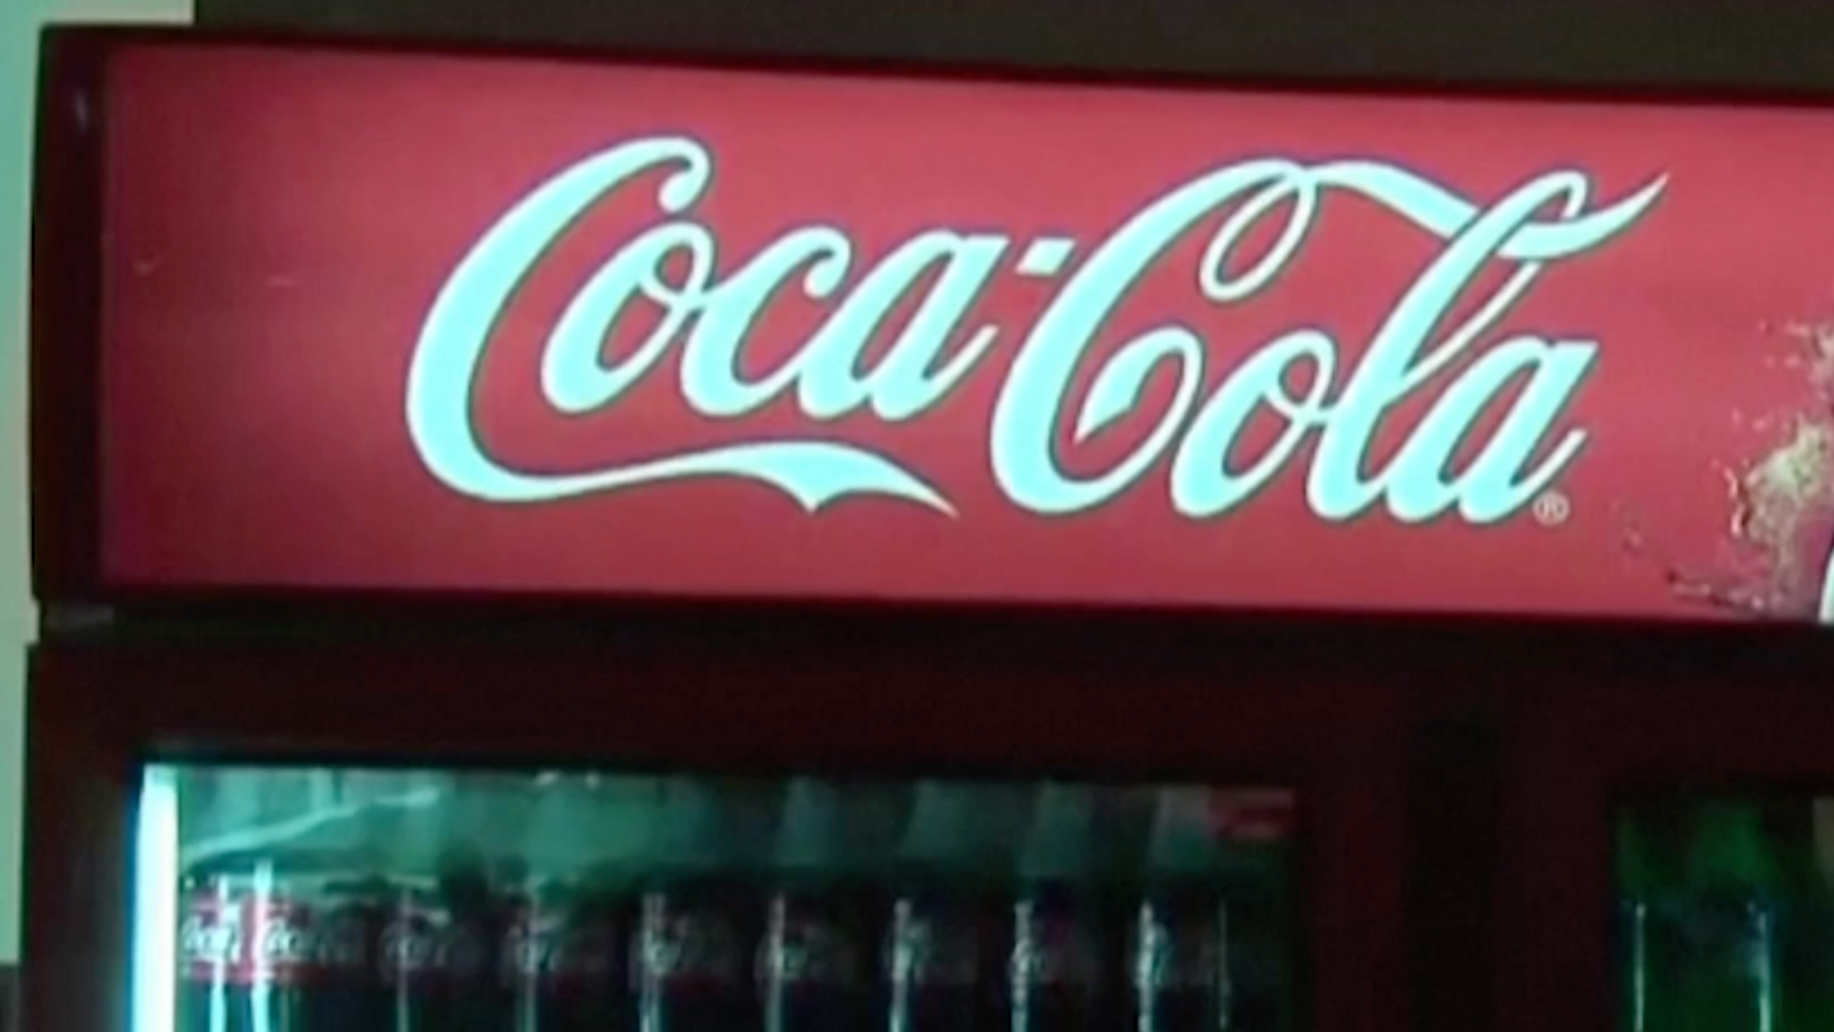 Coca-Cola уйдет с российского рынка